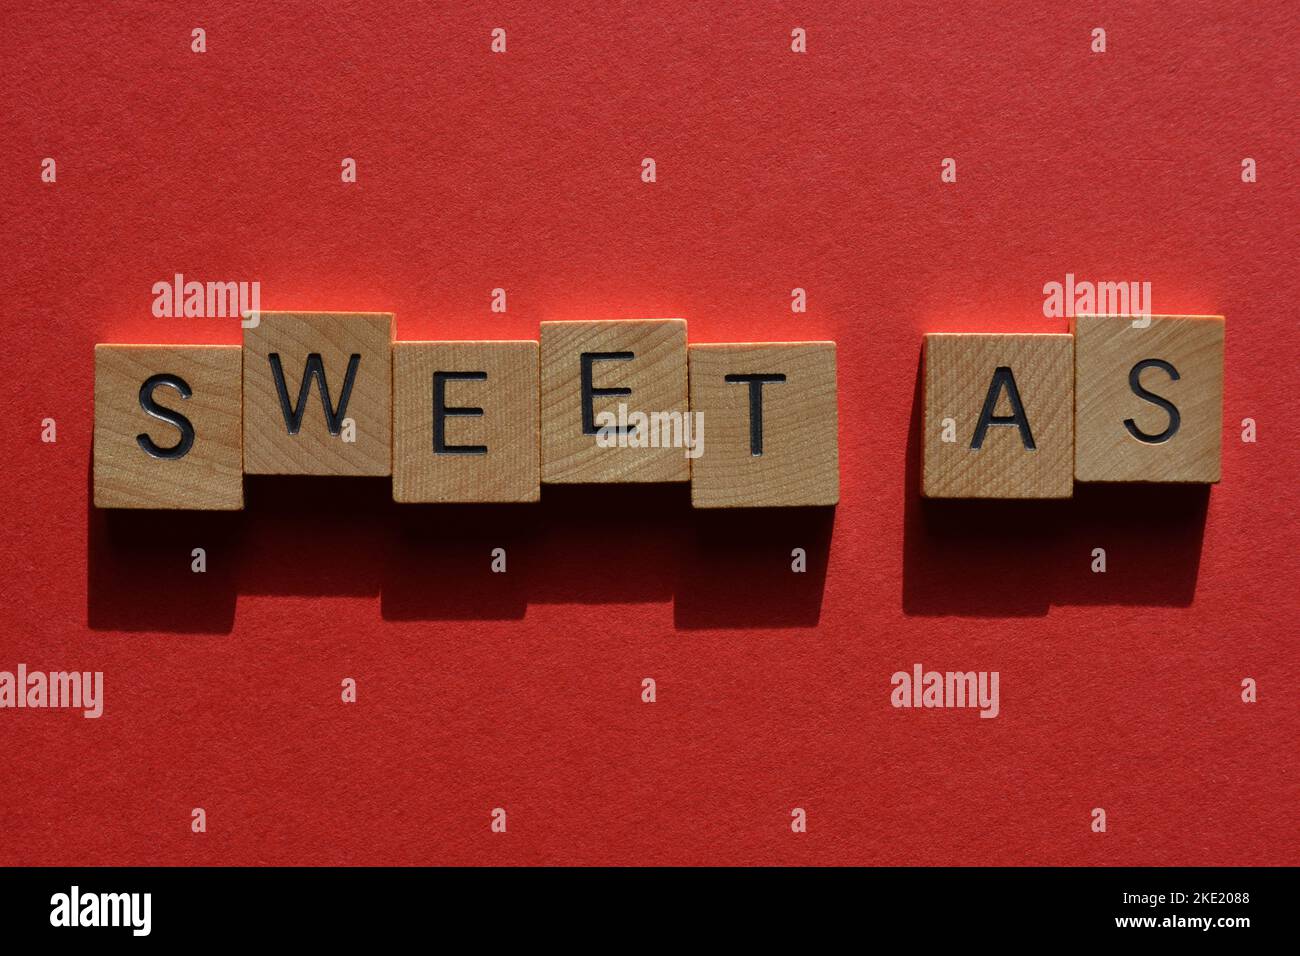 Sweet as, australischer Slang für ehrfürchtig oder gut in hölzernen Buchstaben isoliert auf rotem Hintergrund Stockfoto